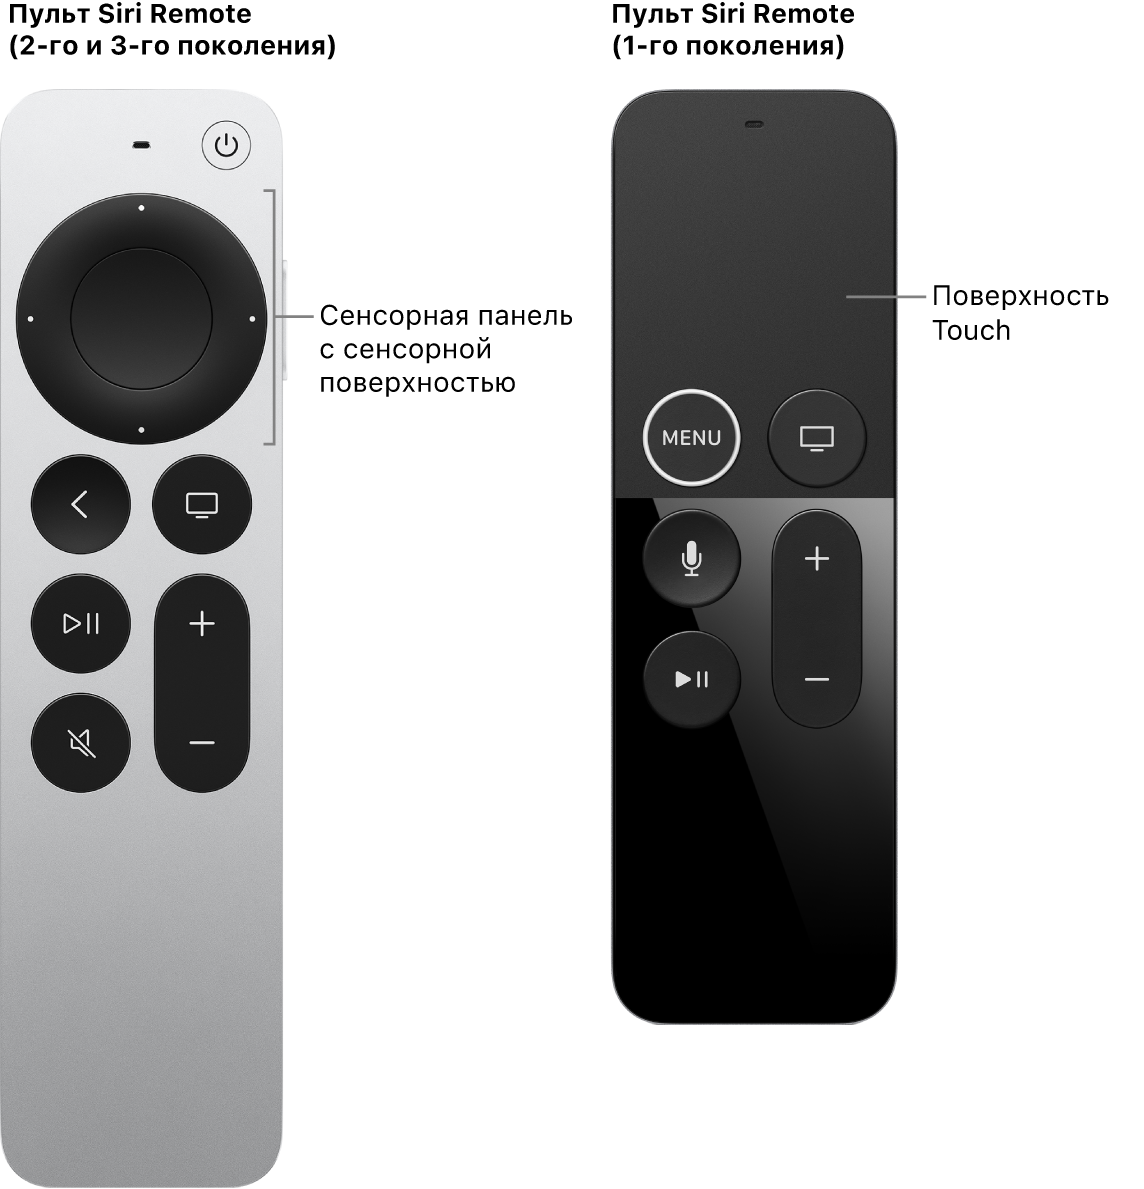 Siri Remote (2-го и 3-го поколения) с сенсорной панелью и Siri Remote (1-го поколения) с сенсорной поверхностью